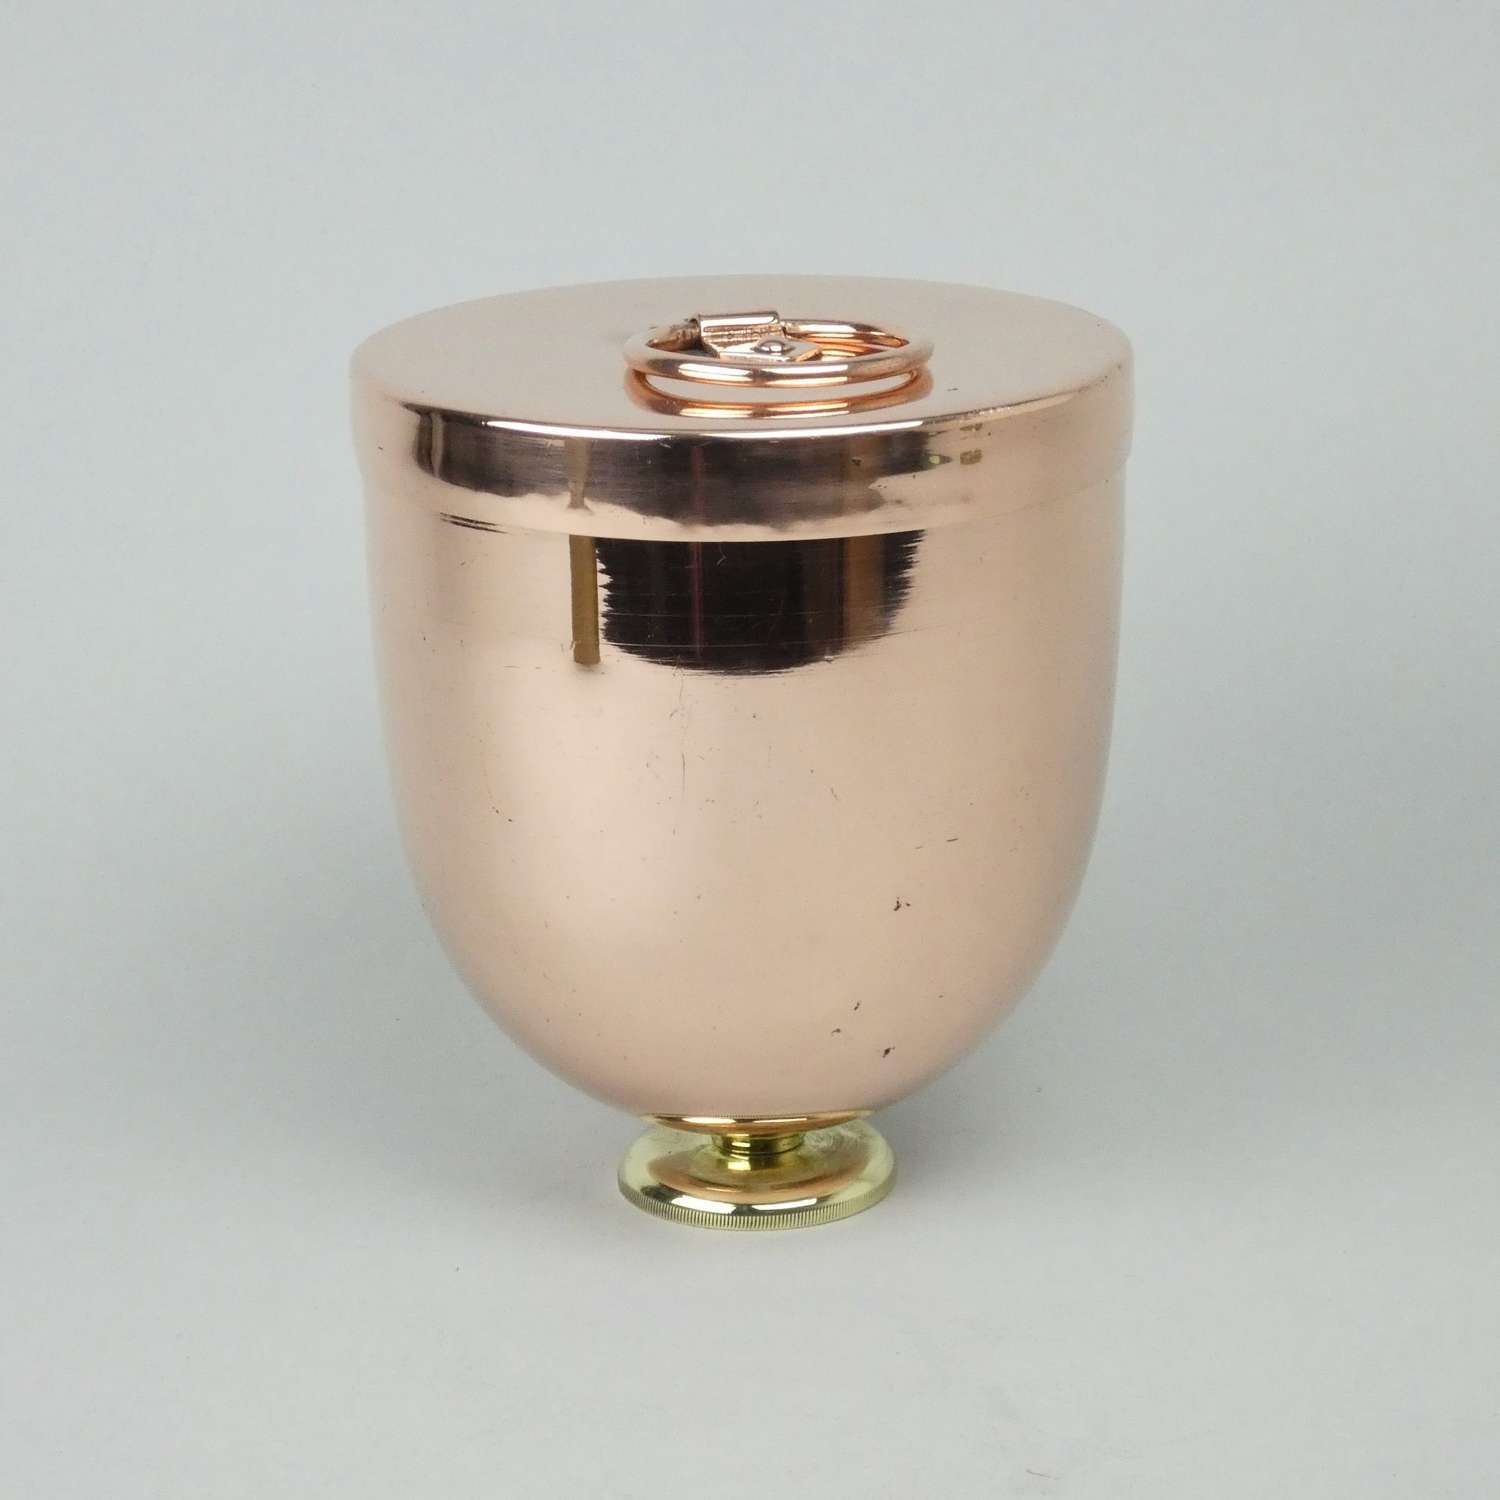 Copper ice cream 'bombe' mould